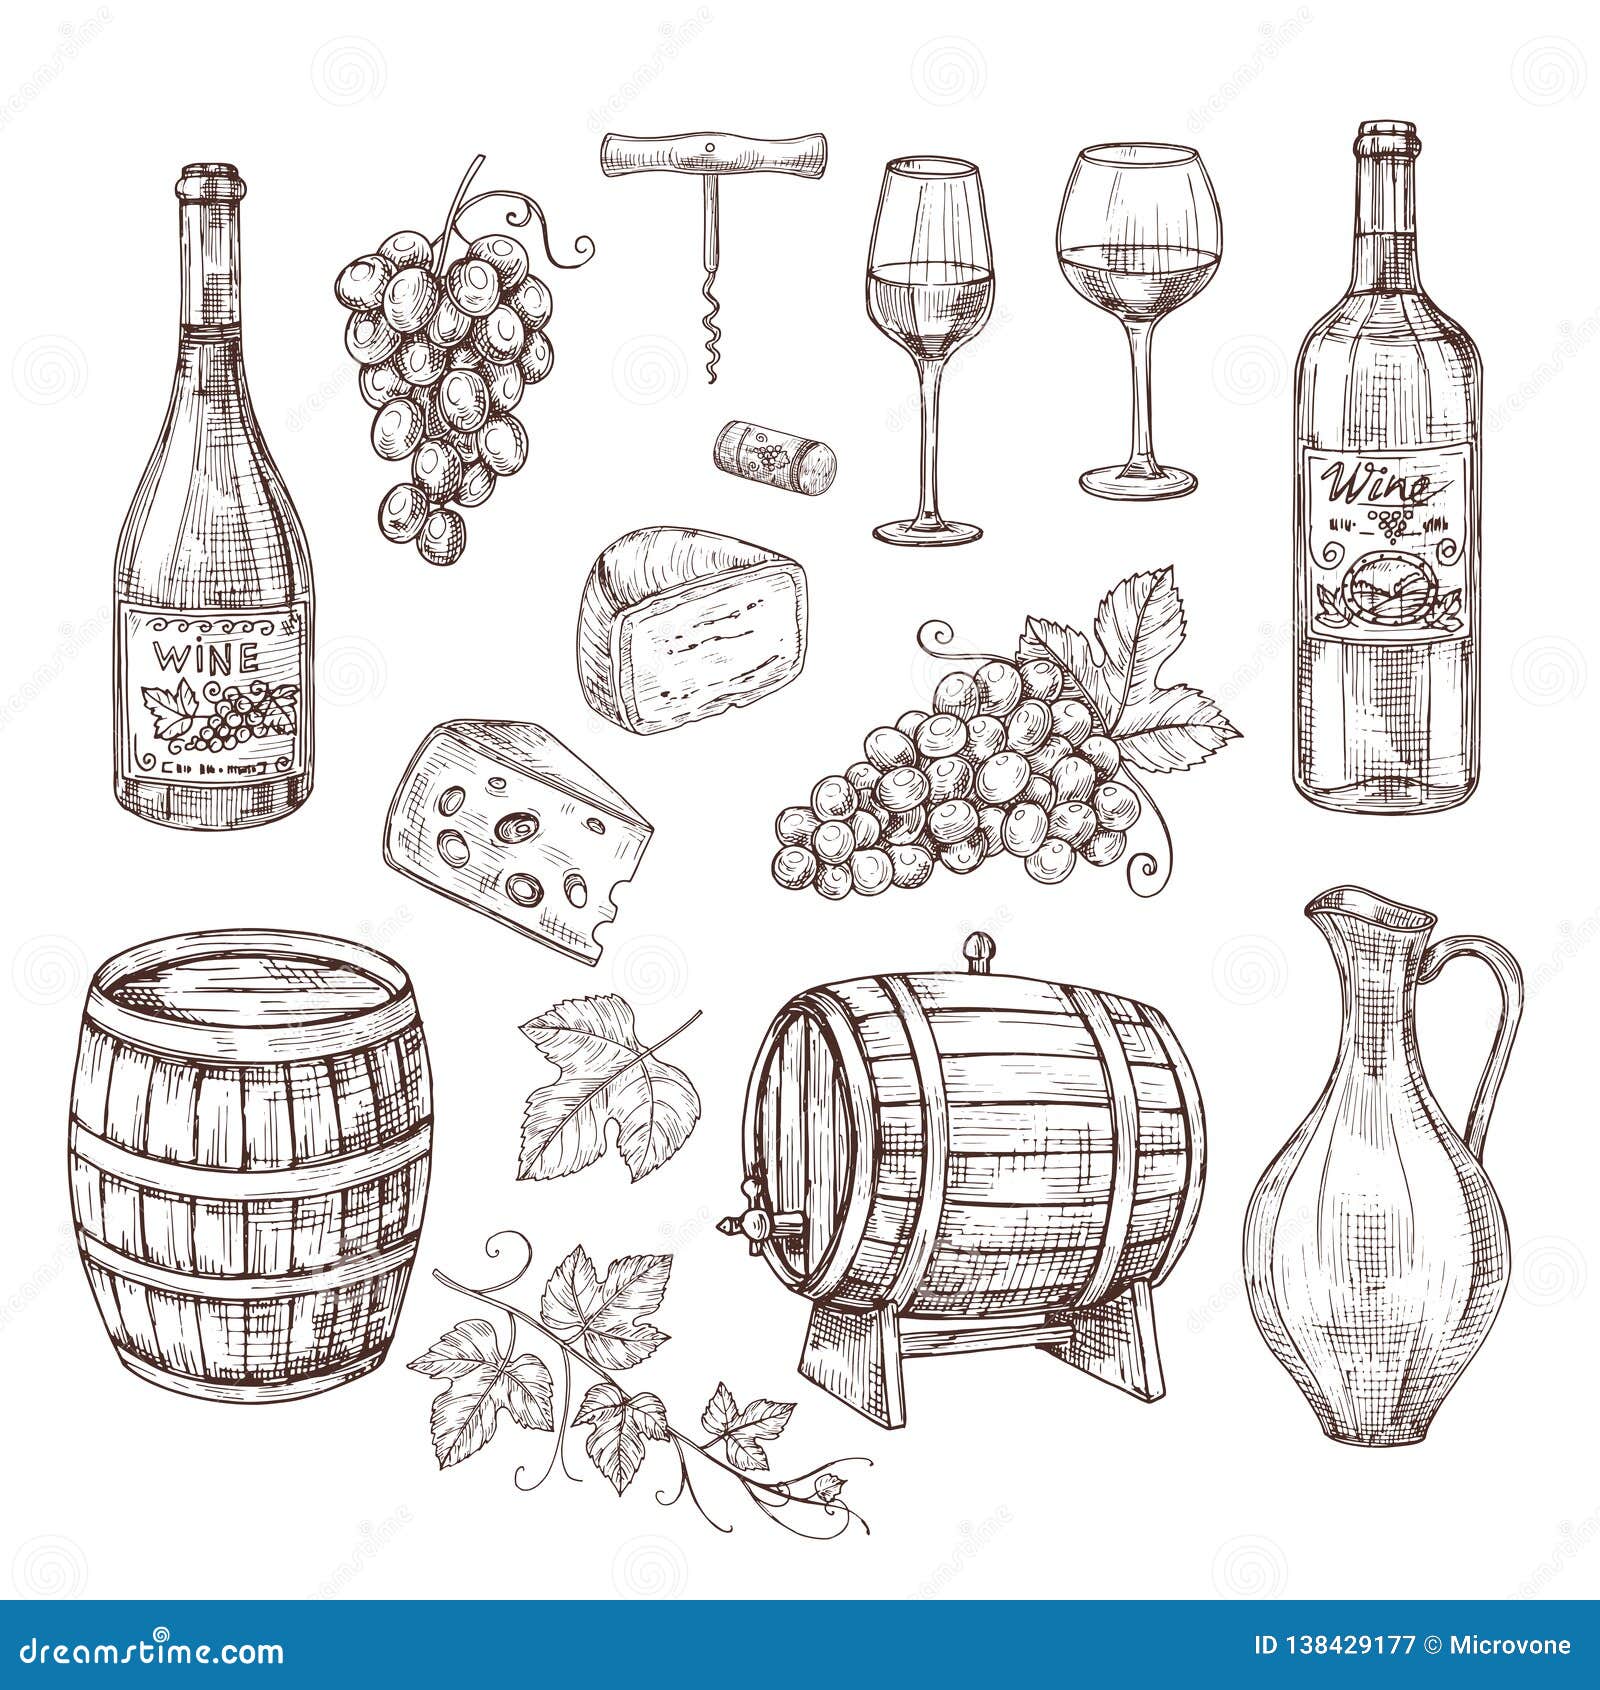 sketch wine set. grape, wine bottles and wineglass, barrel. hand drawn vintage alcoholic beverages  set